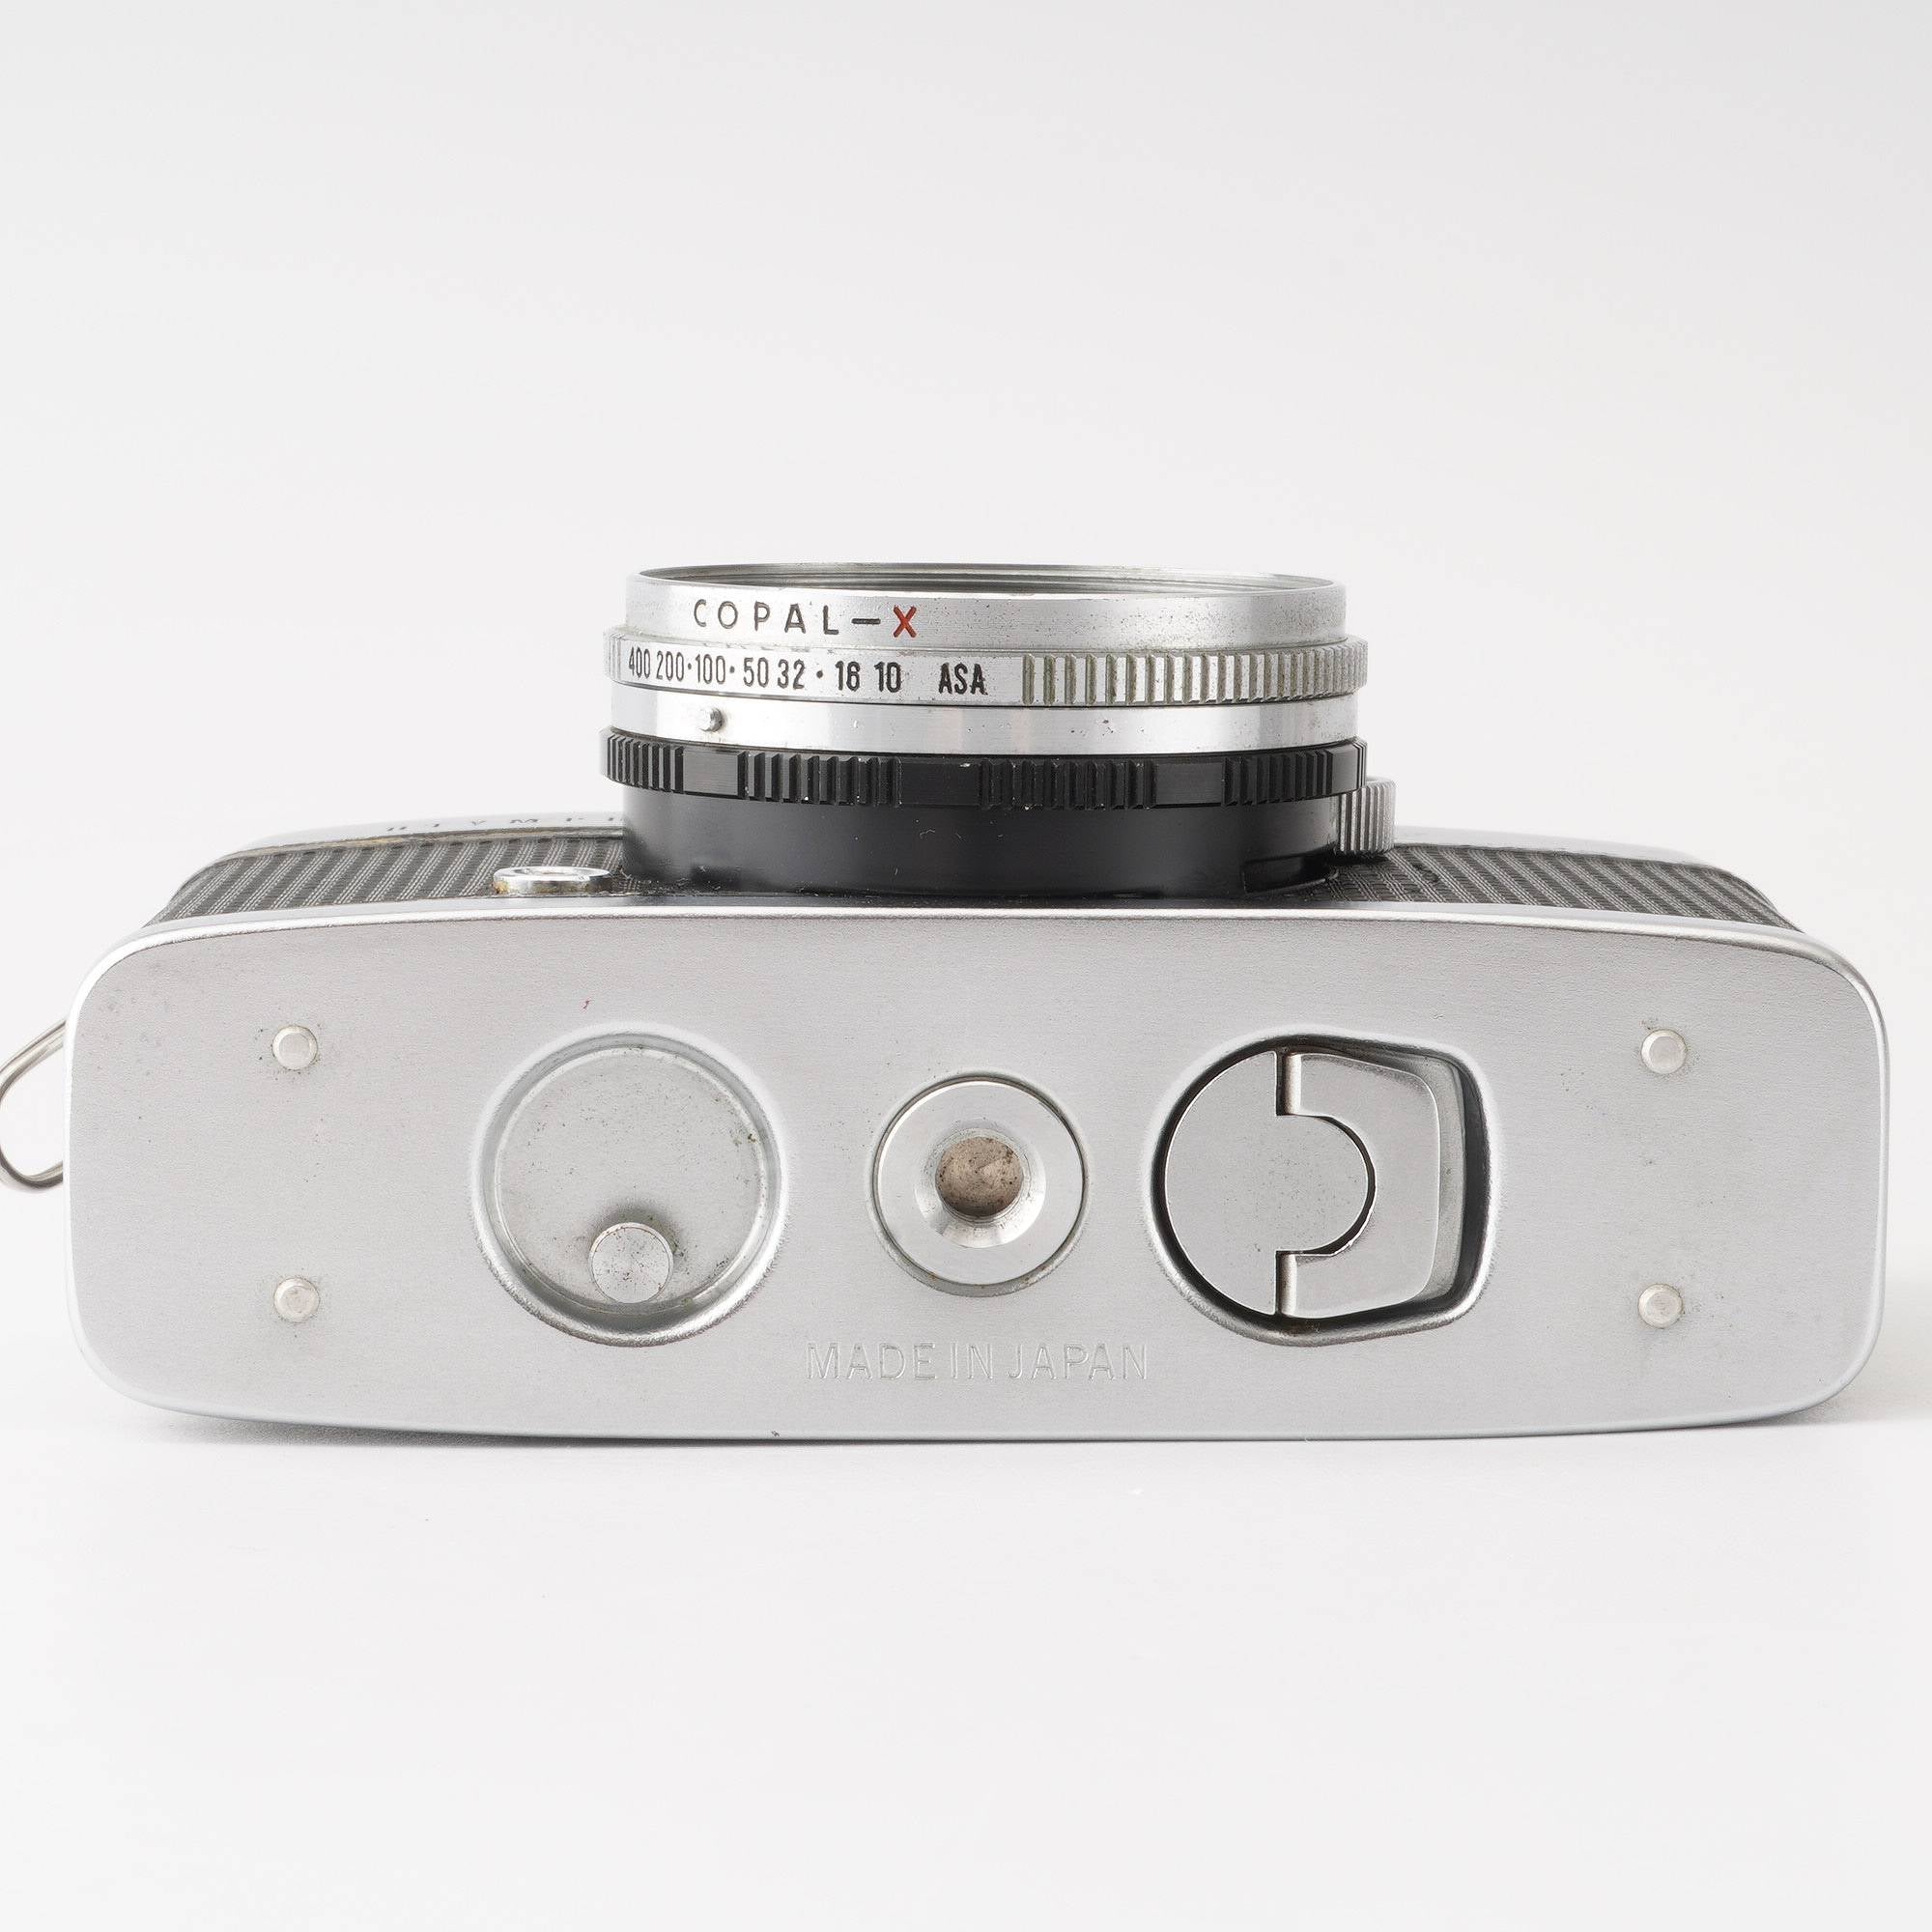 オリンパス OLYMPUS PEN-D 32mm F1.9 - フィルムカメラ